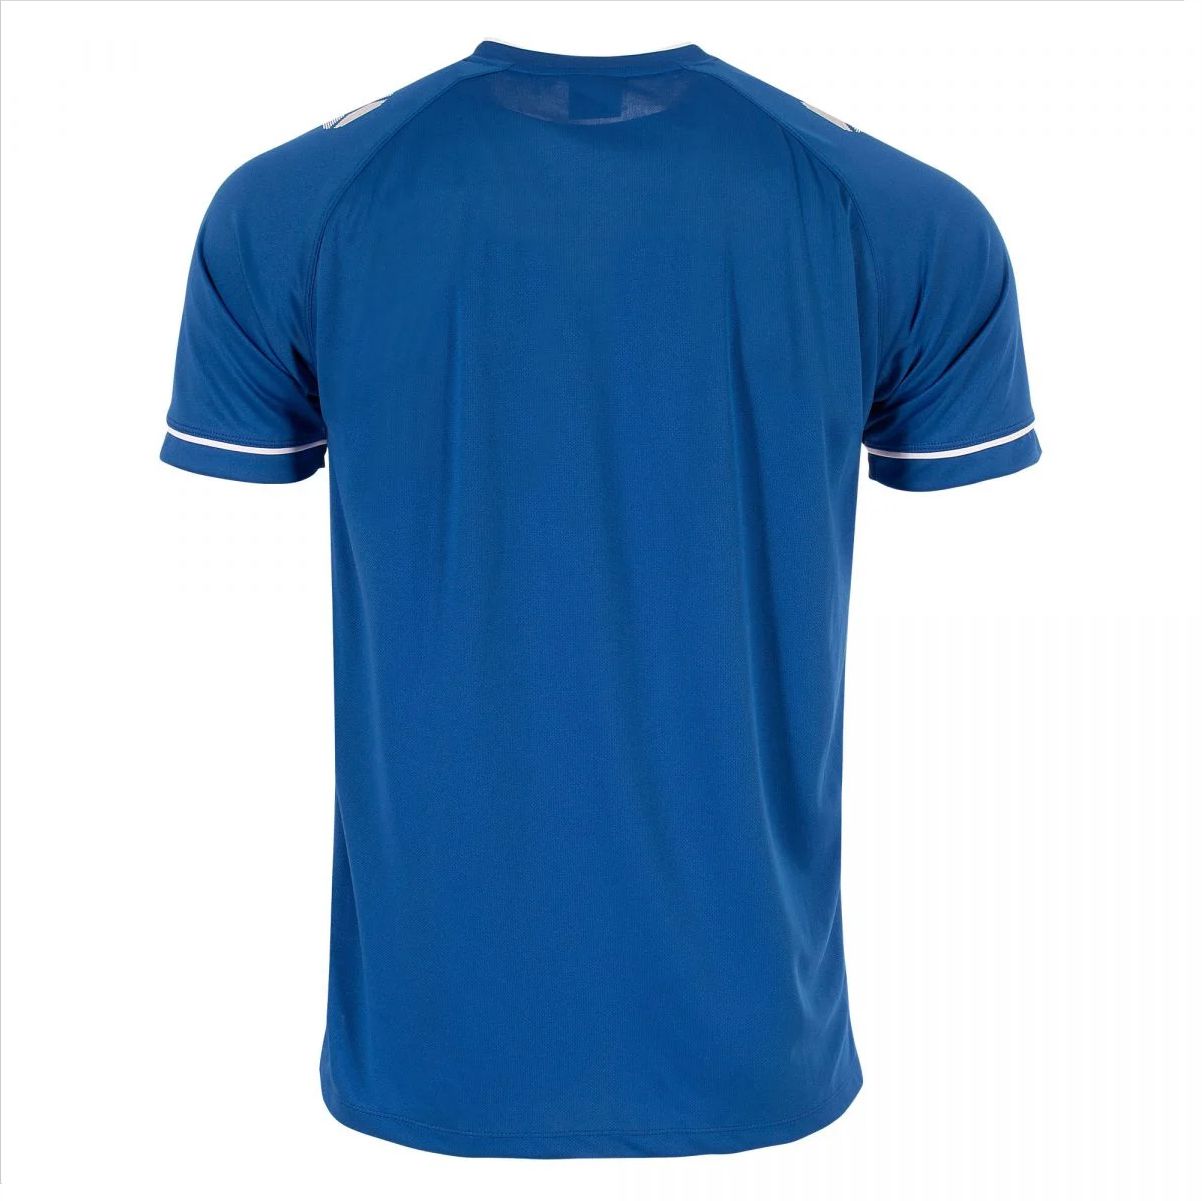 Stanno - Dash Shirt -Blue & White